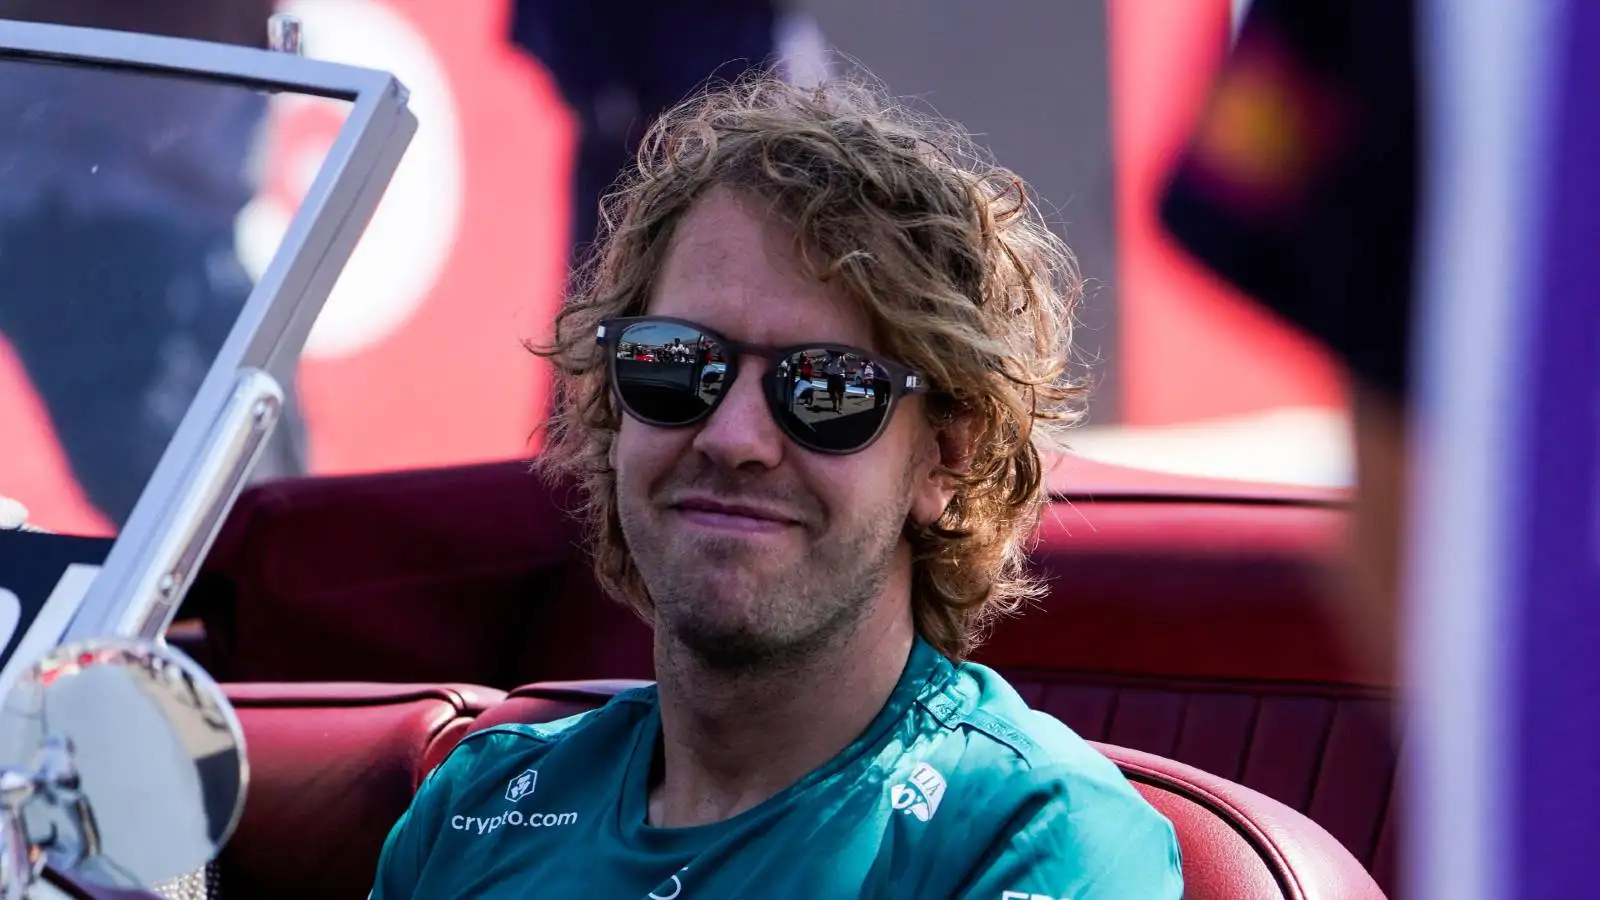 Sebastian Vettel wearing sunglasses. Paul Ricard July 2022.